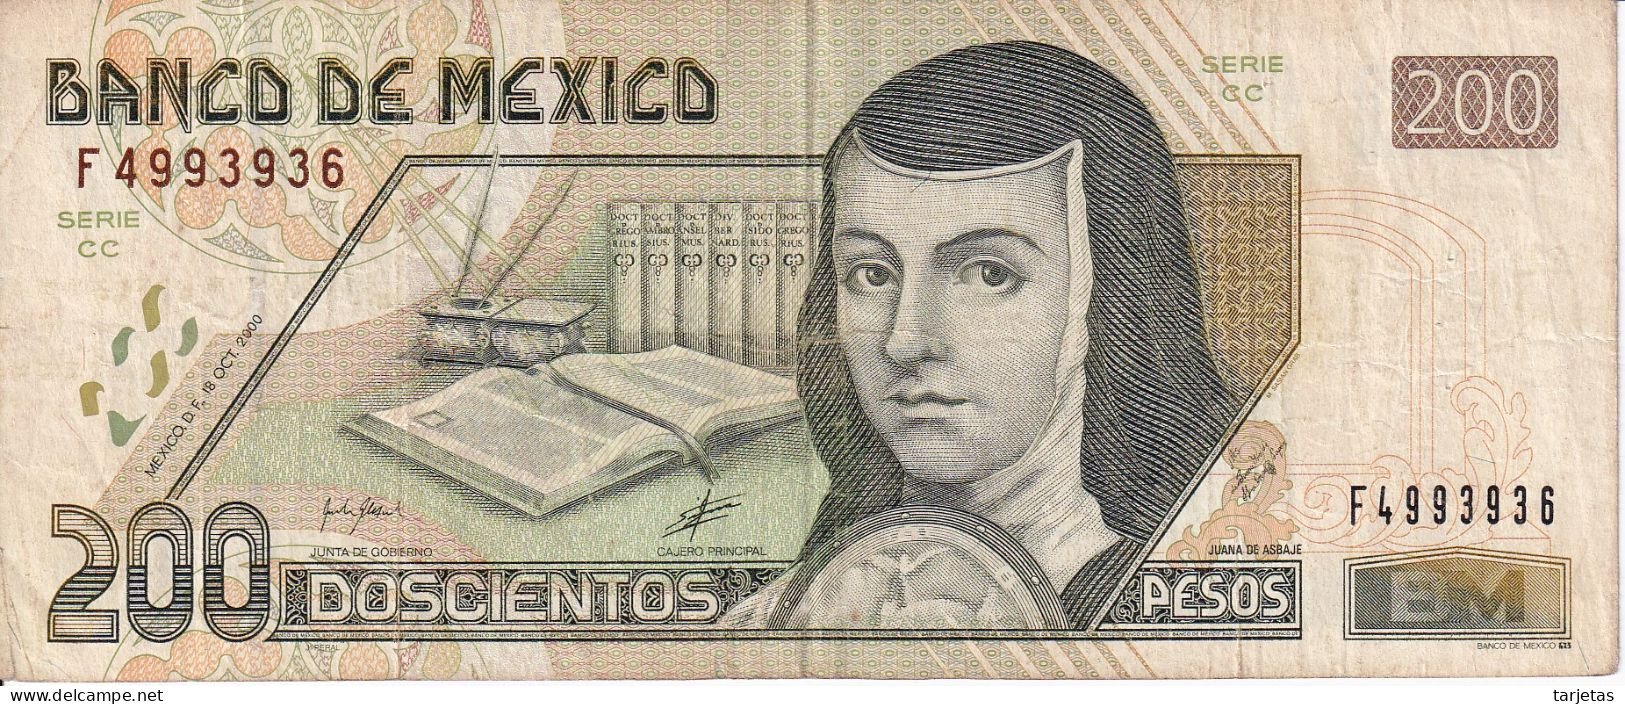 BILLETE DE MEXICO DE 200 PESOS DEL AÑO 2000 (BANKNOTE) - Mexico